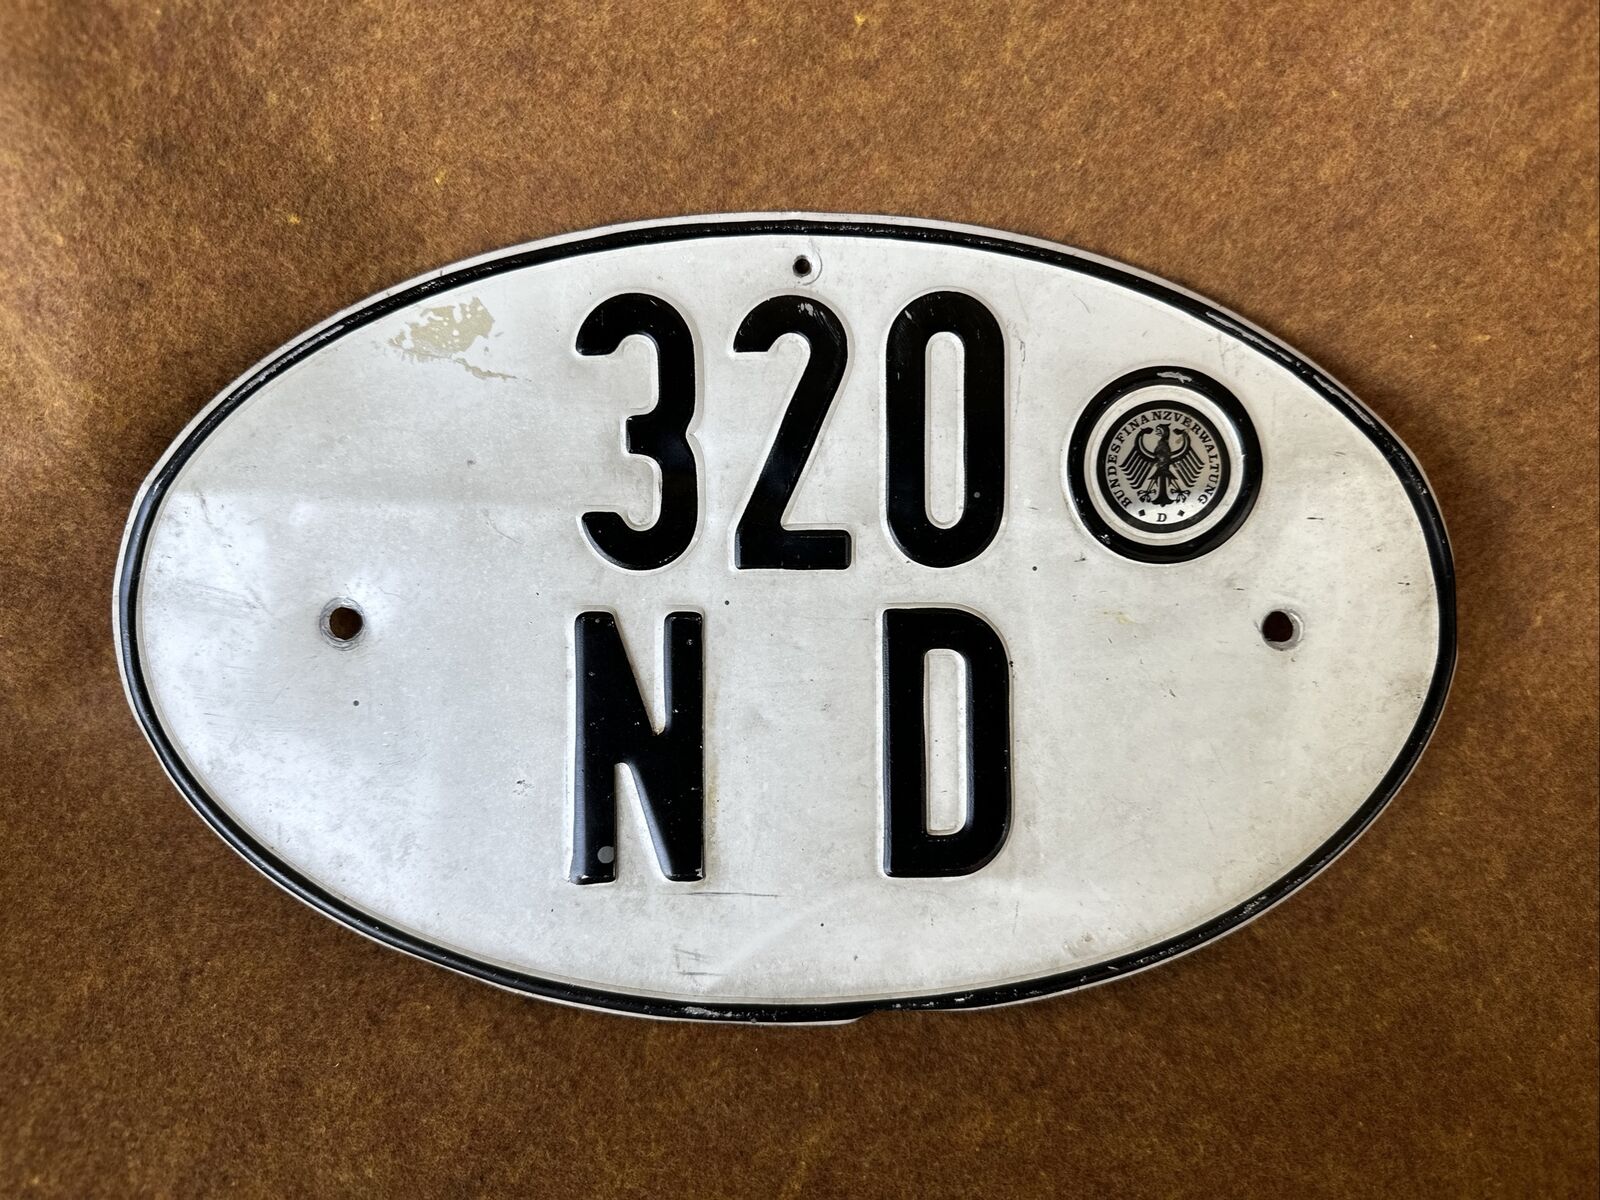 Vintage German Oval Metal Vehicle License Plate Bundesfinanzverwaltung 320 ND